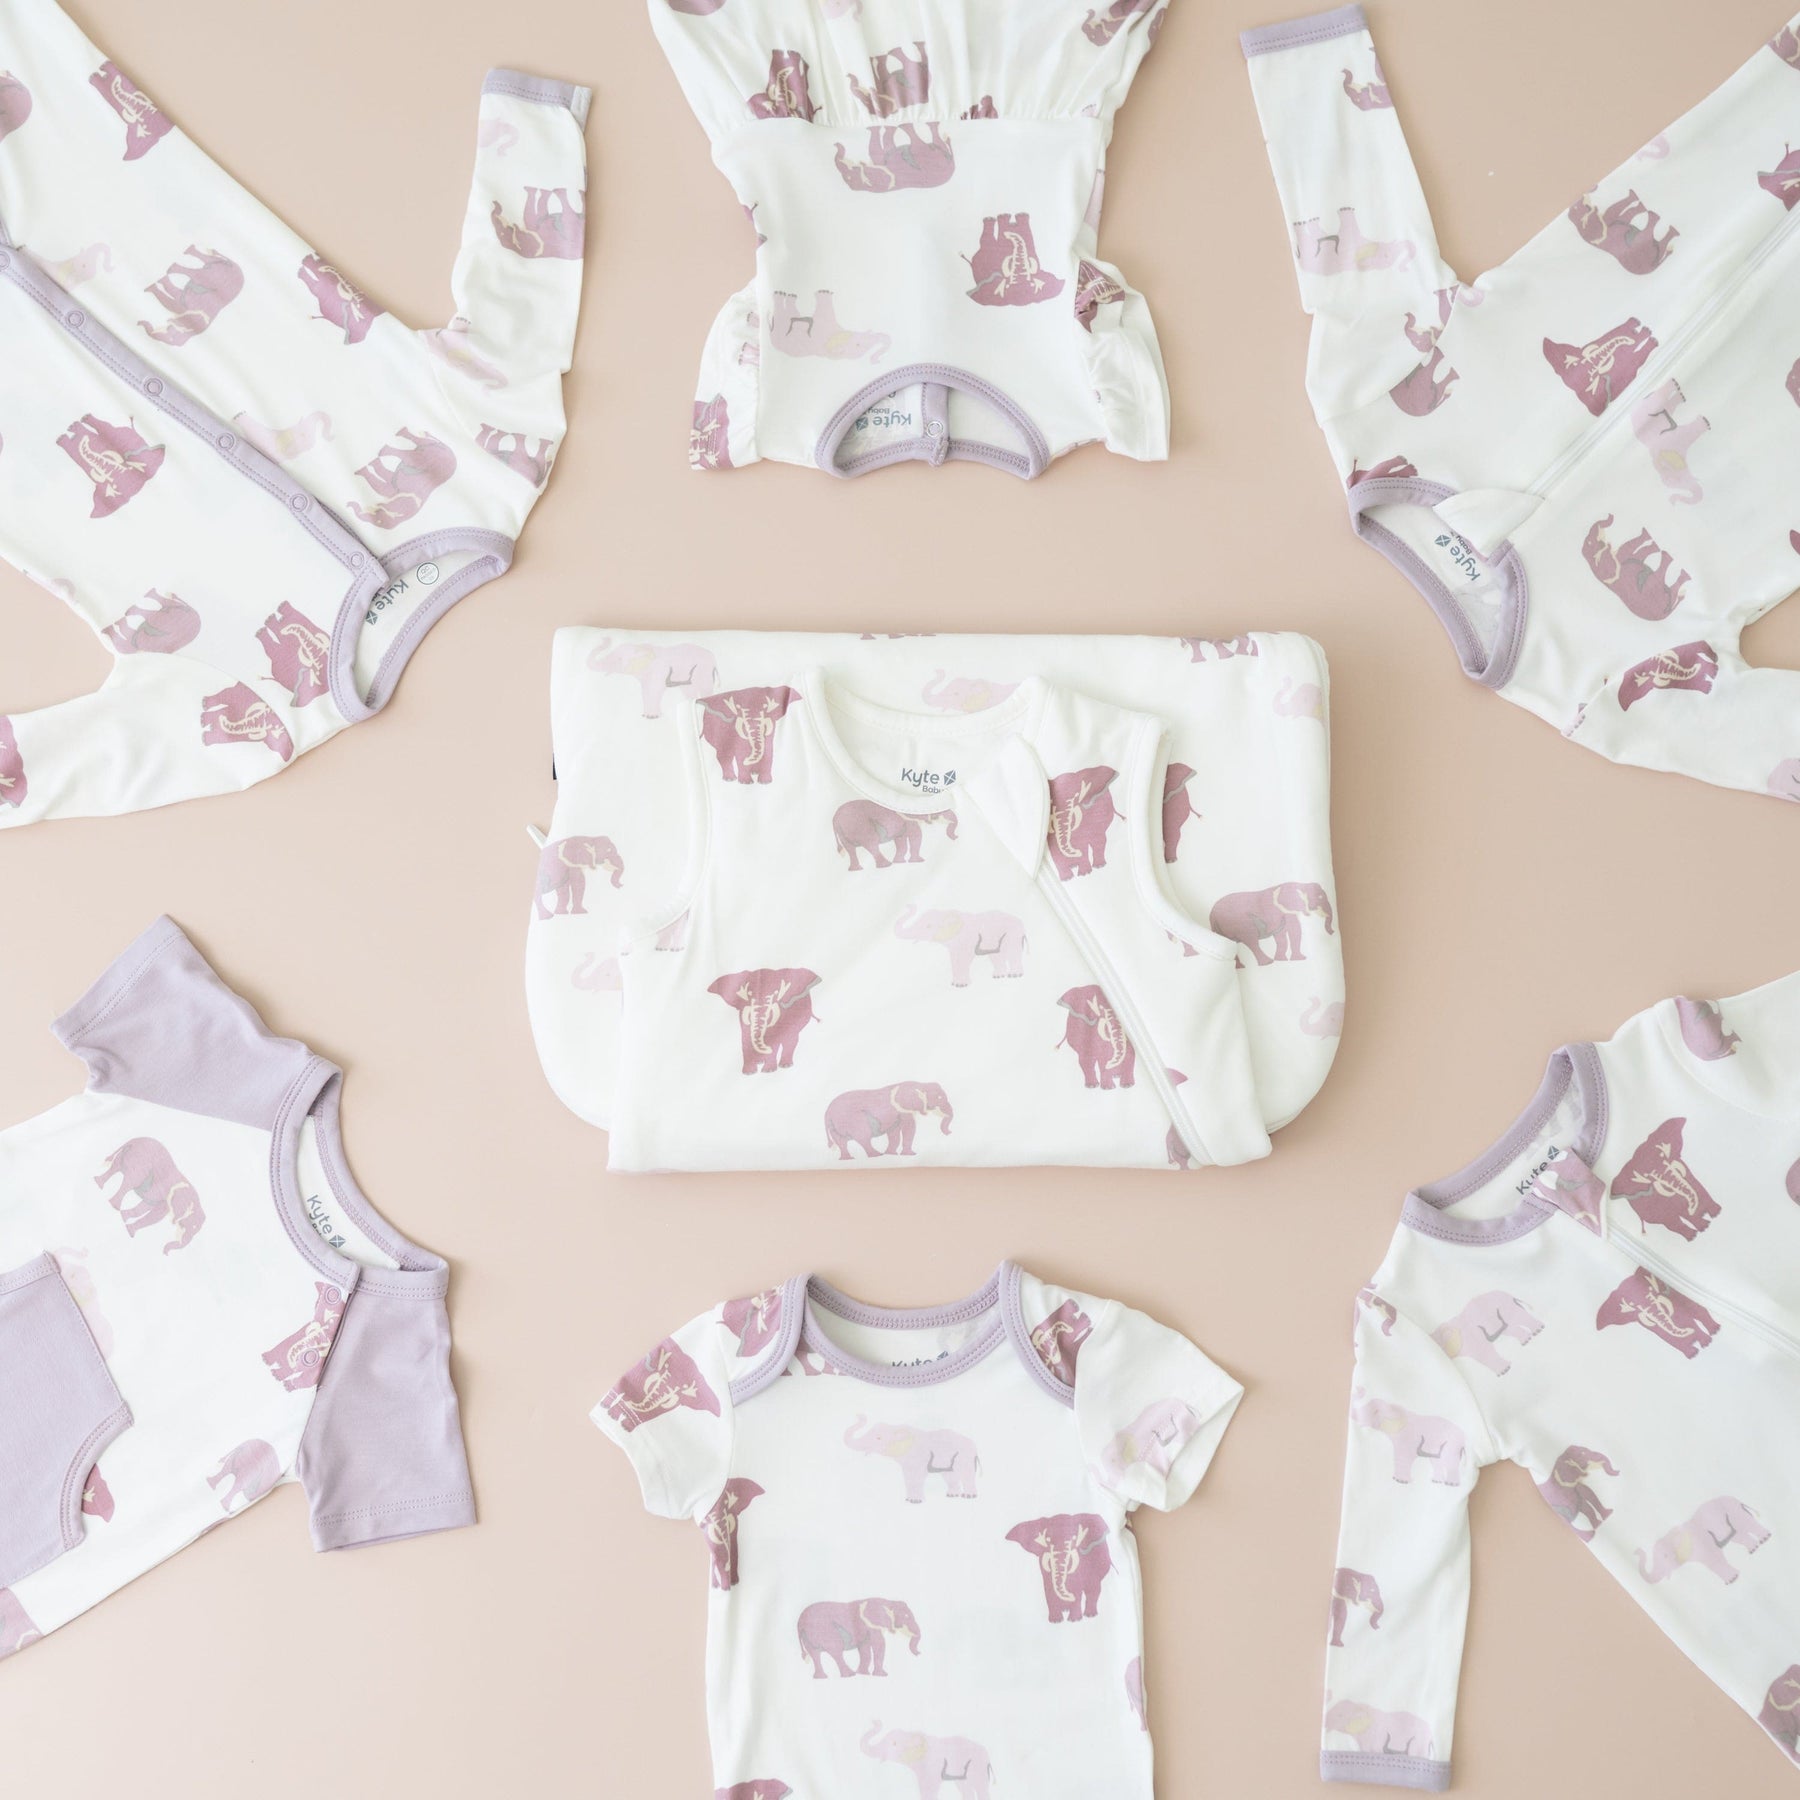 Kyte Baby sleepwear in Elephant pattern